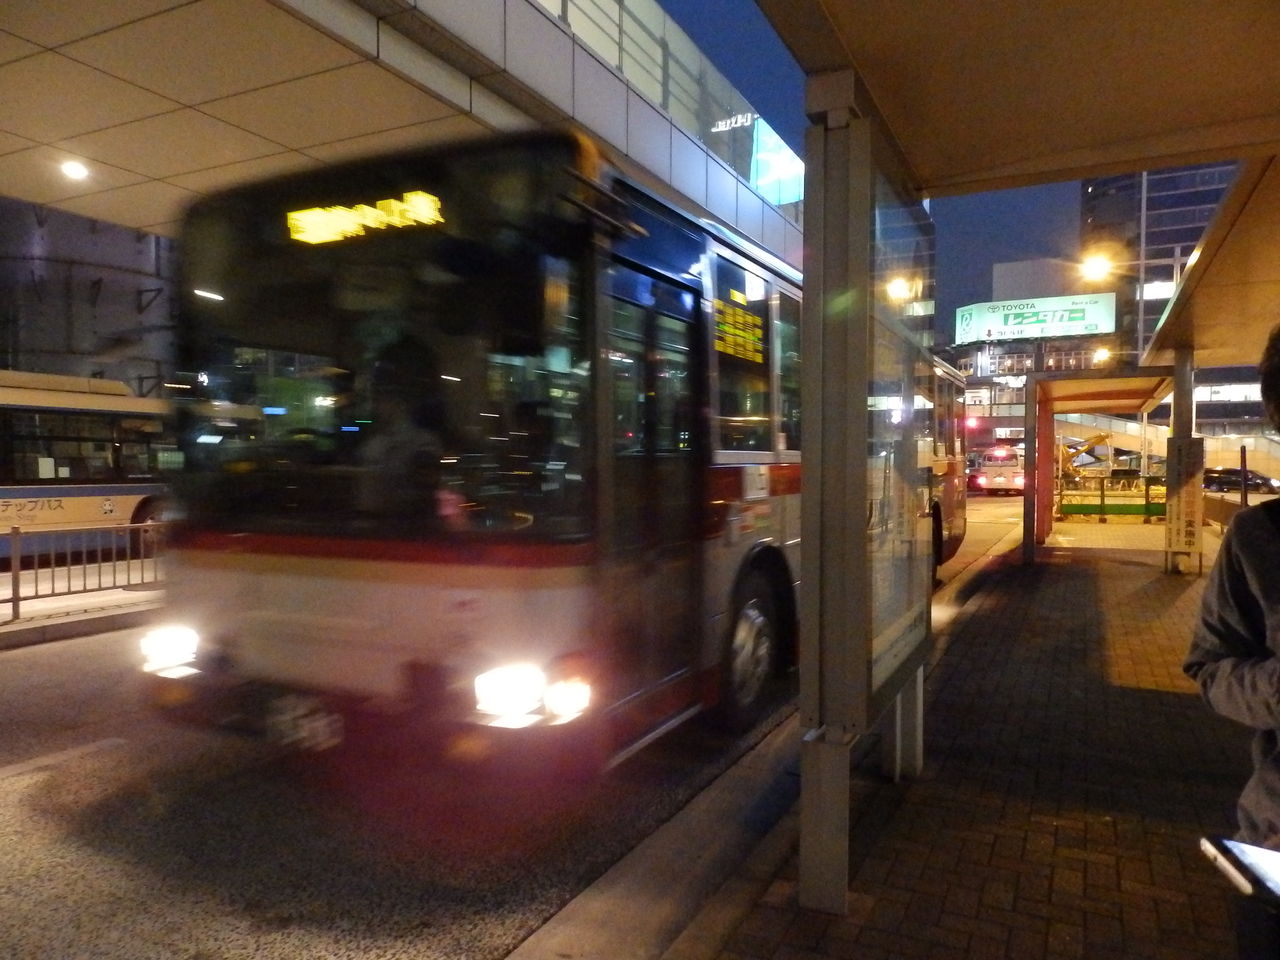 第三京浜経由の路線バス 東急バス新横溝口線 に乗ってきた フヒアの乗り物探検隊